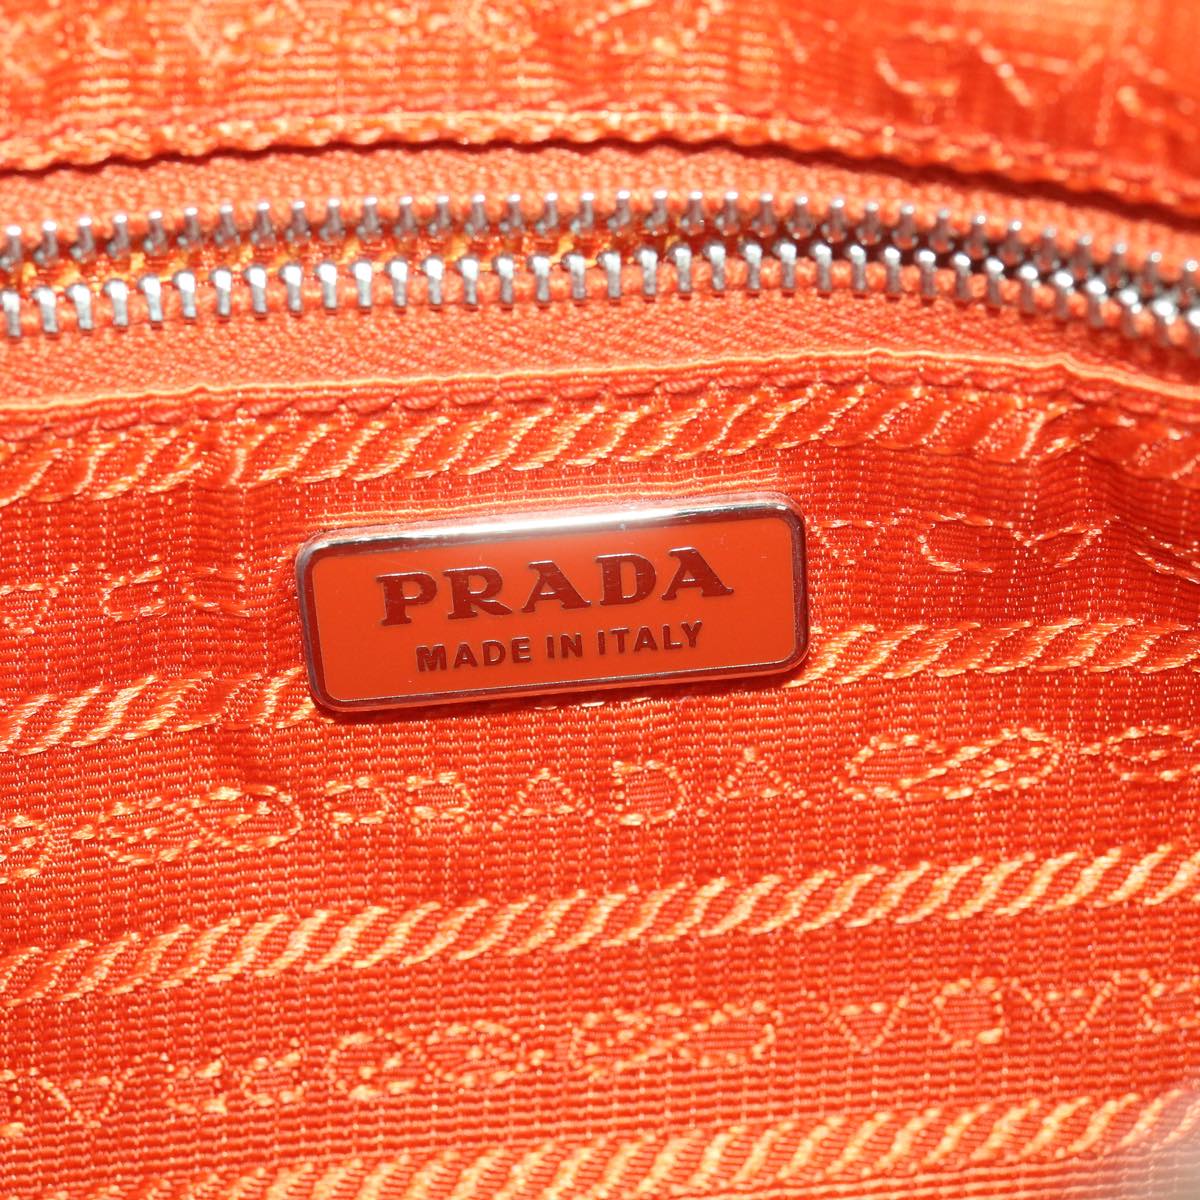 PRADA Accessory Pouch Nylon Orange Auth 37889